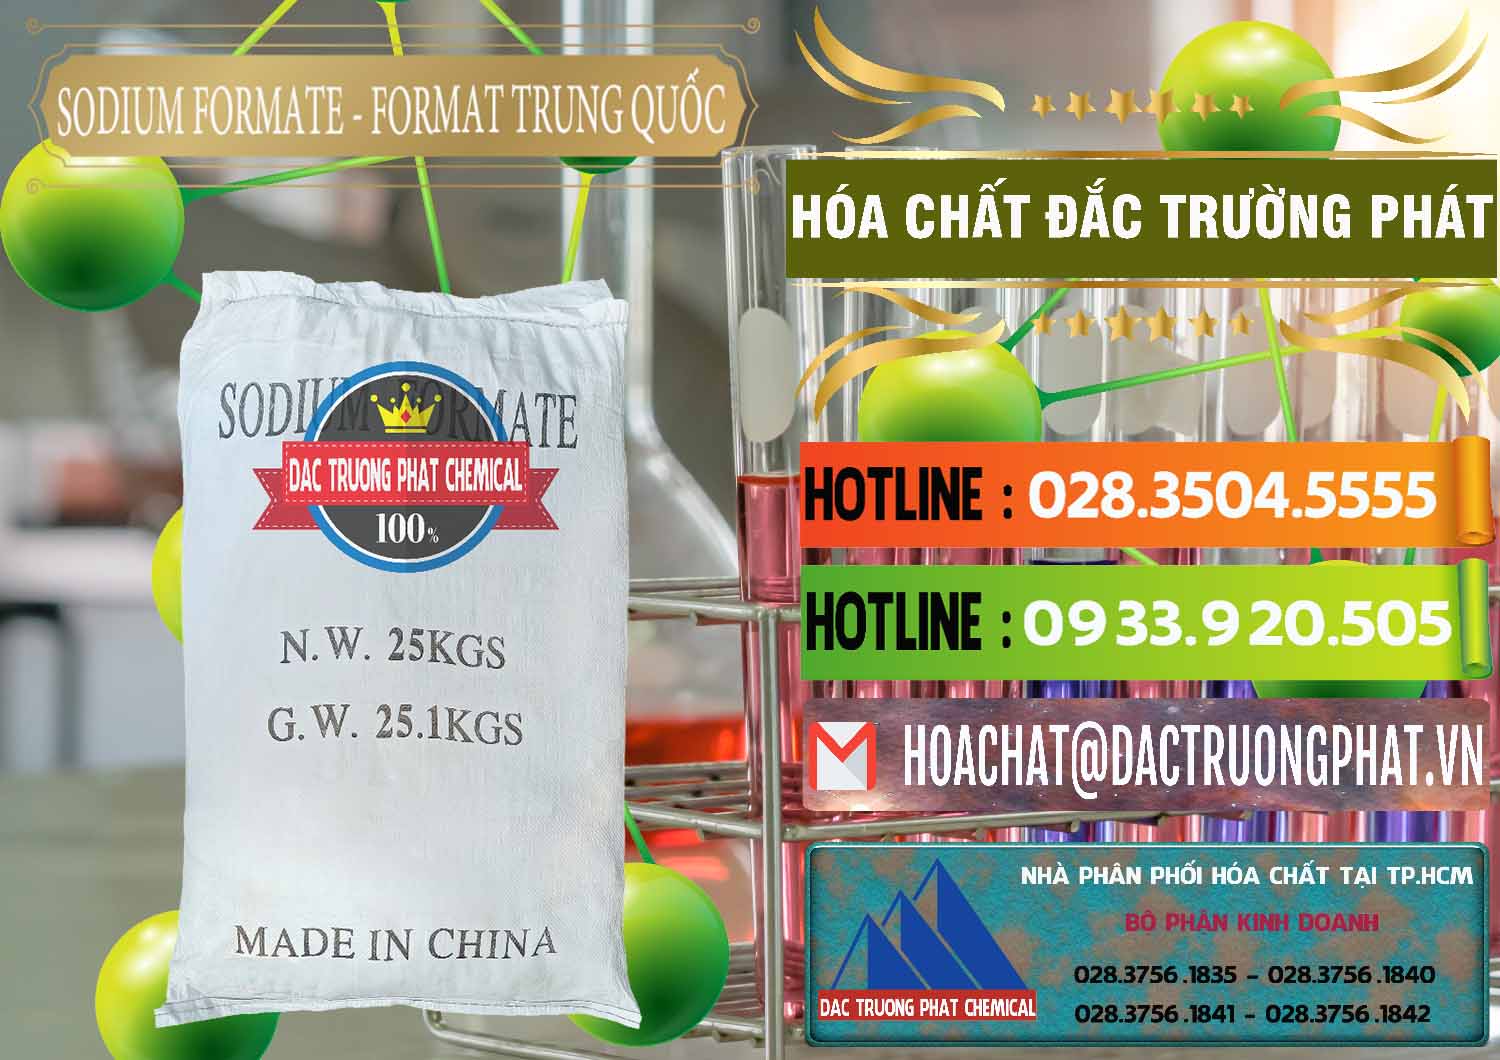 Cty chuyên nhập khẩu & bán Sodium Formate - Natri Format Trung Quốc China - 0142 - Cty nhập khẩu - phân phối hóa chất tại TP.HCM - cungcaphoachat.com.vn